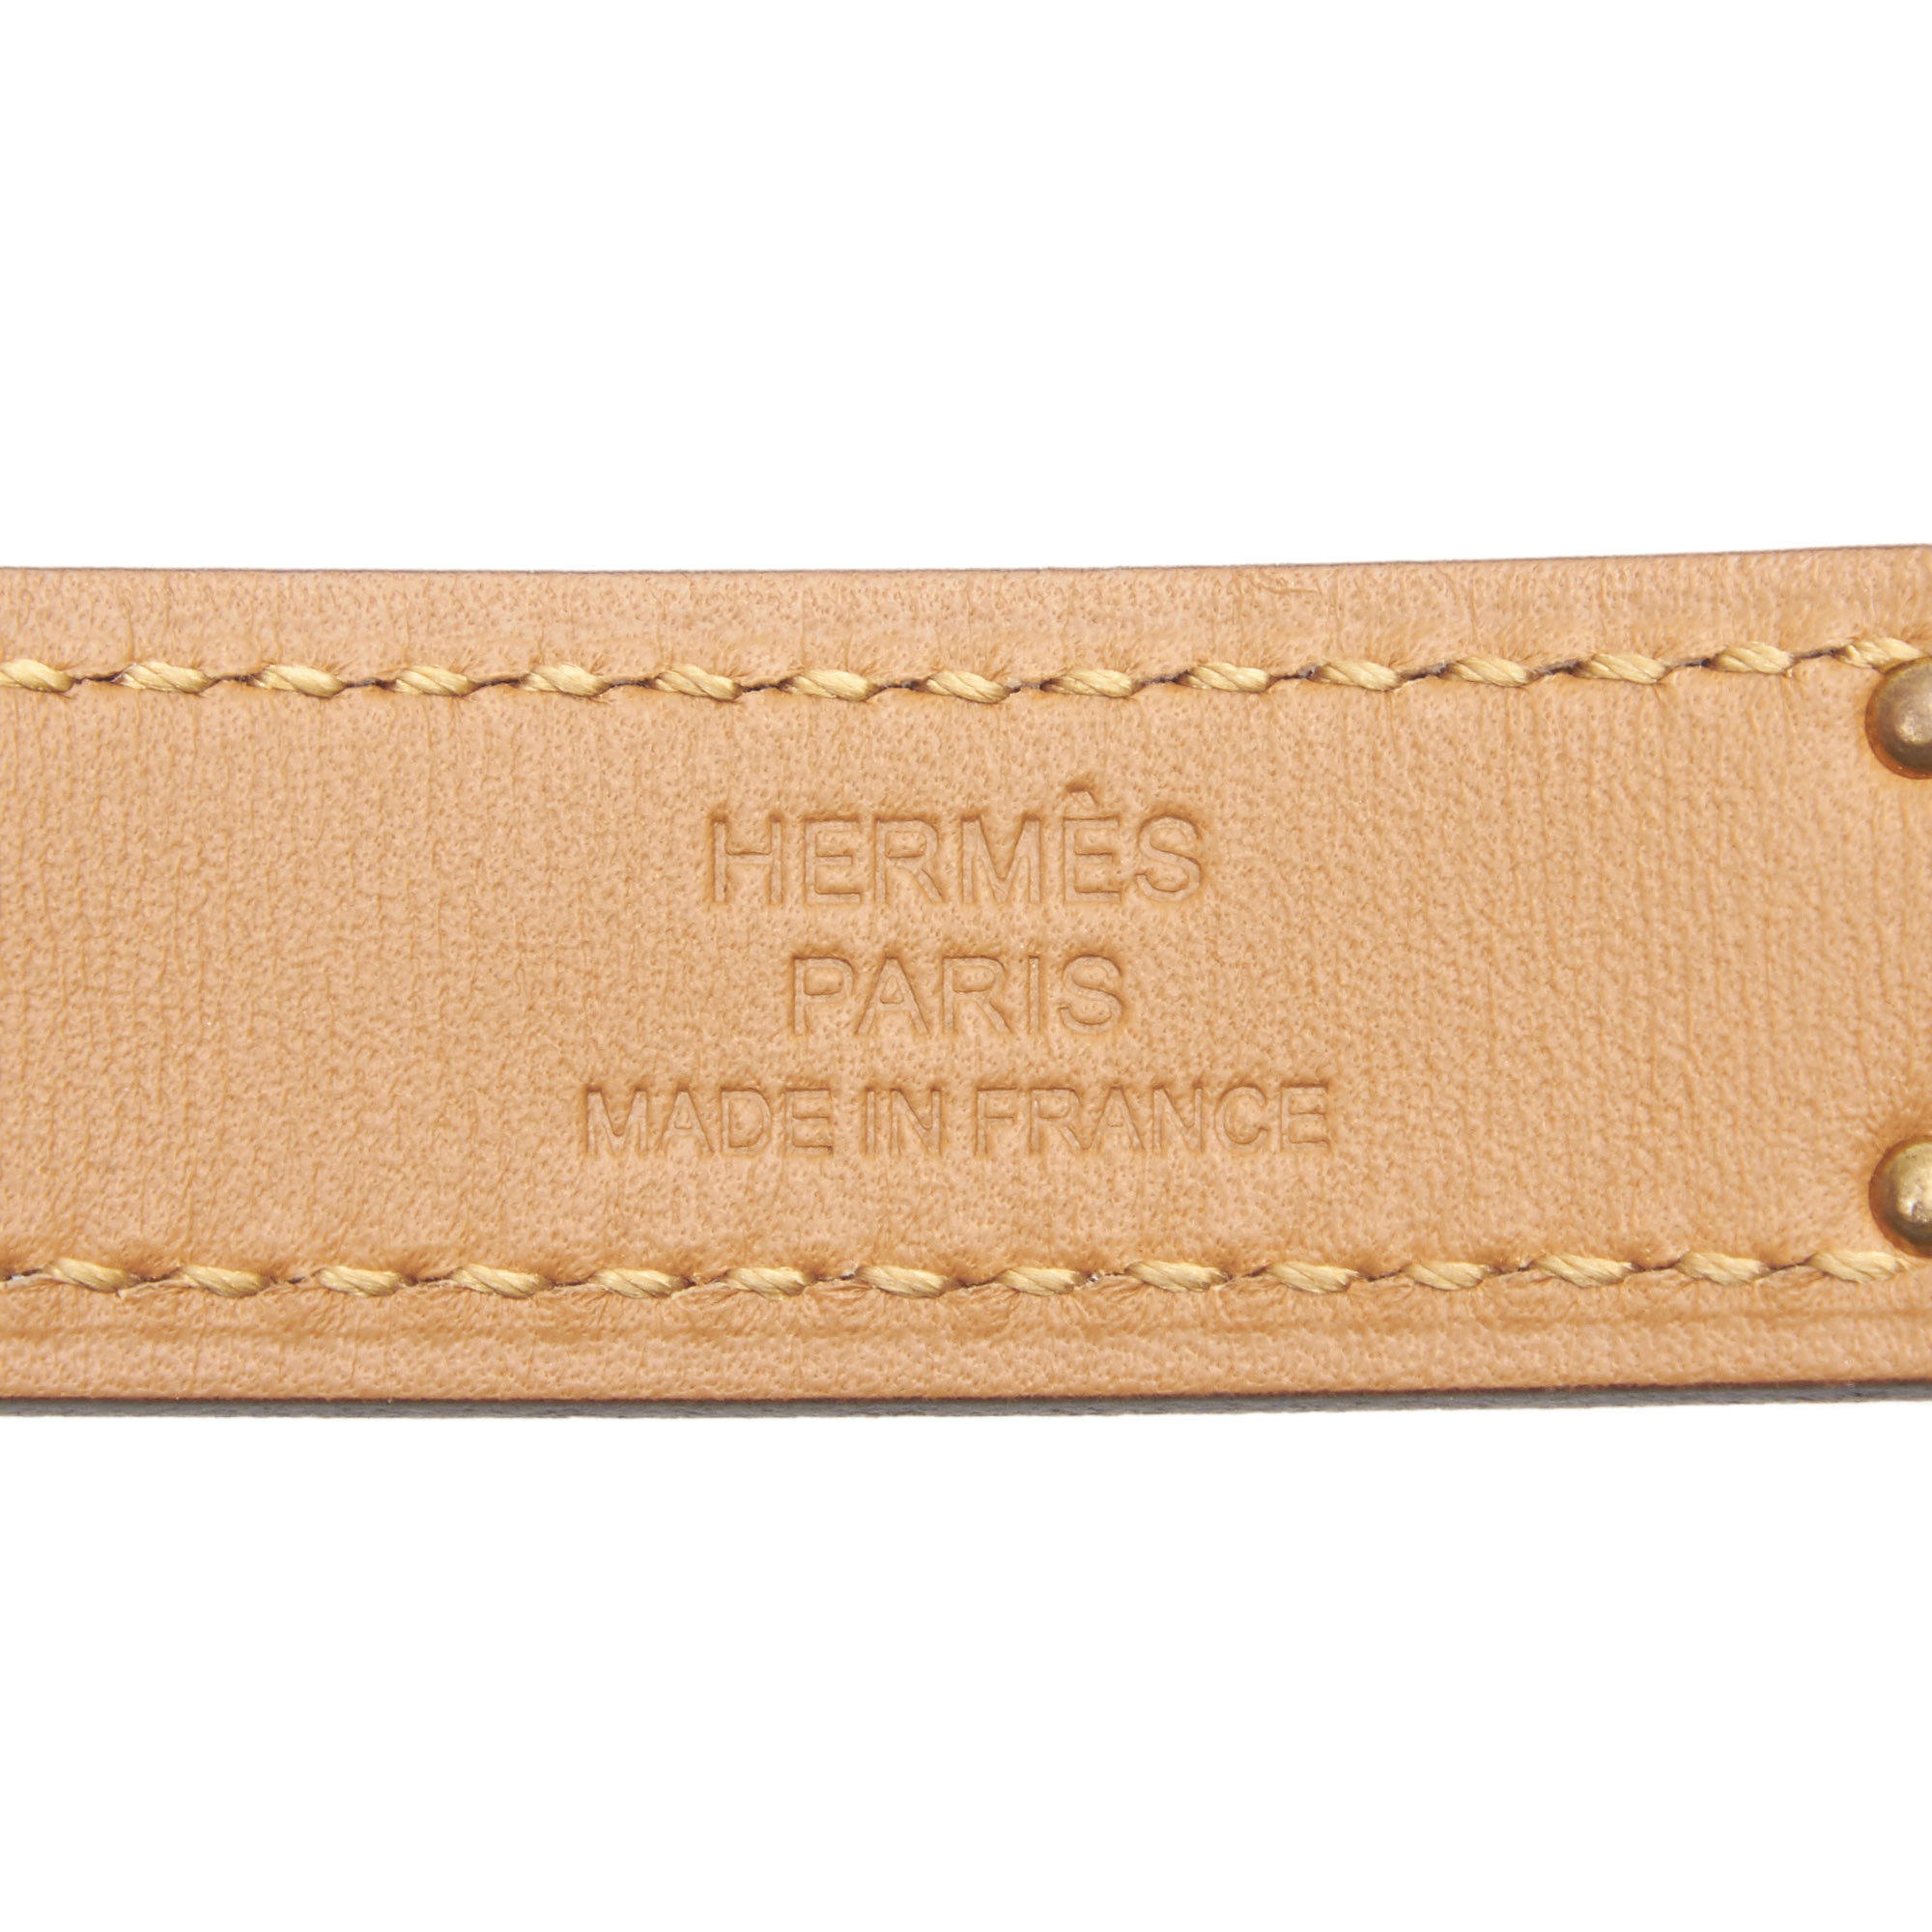 Pre-Loved Hermes Yellow Calf Leather Epsom Kelly Belt France | eBay